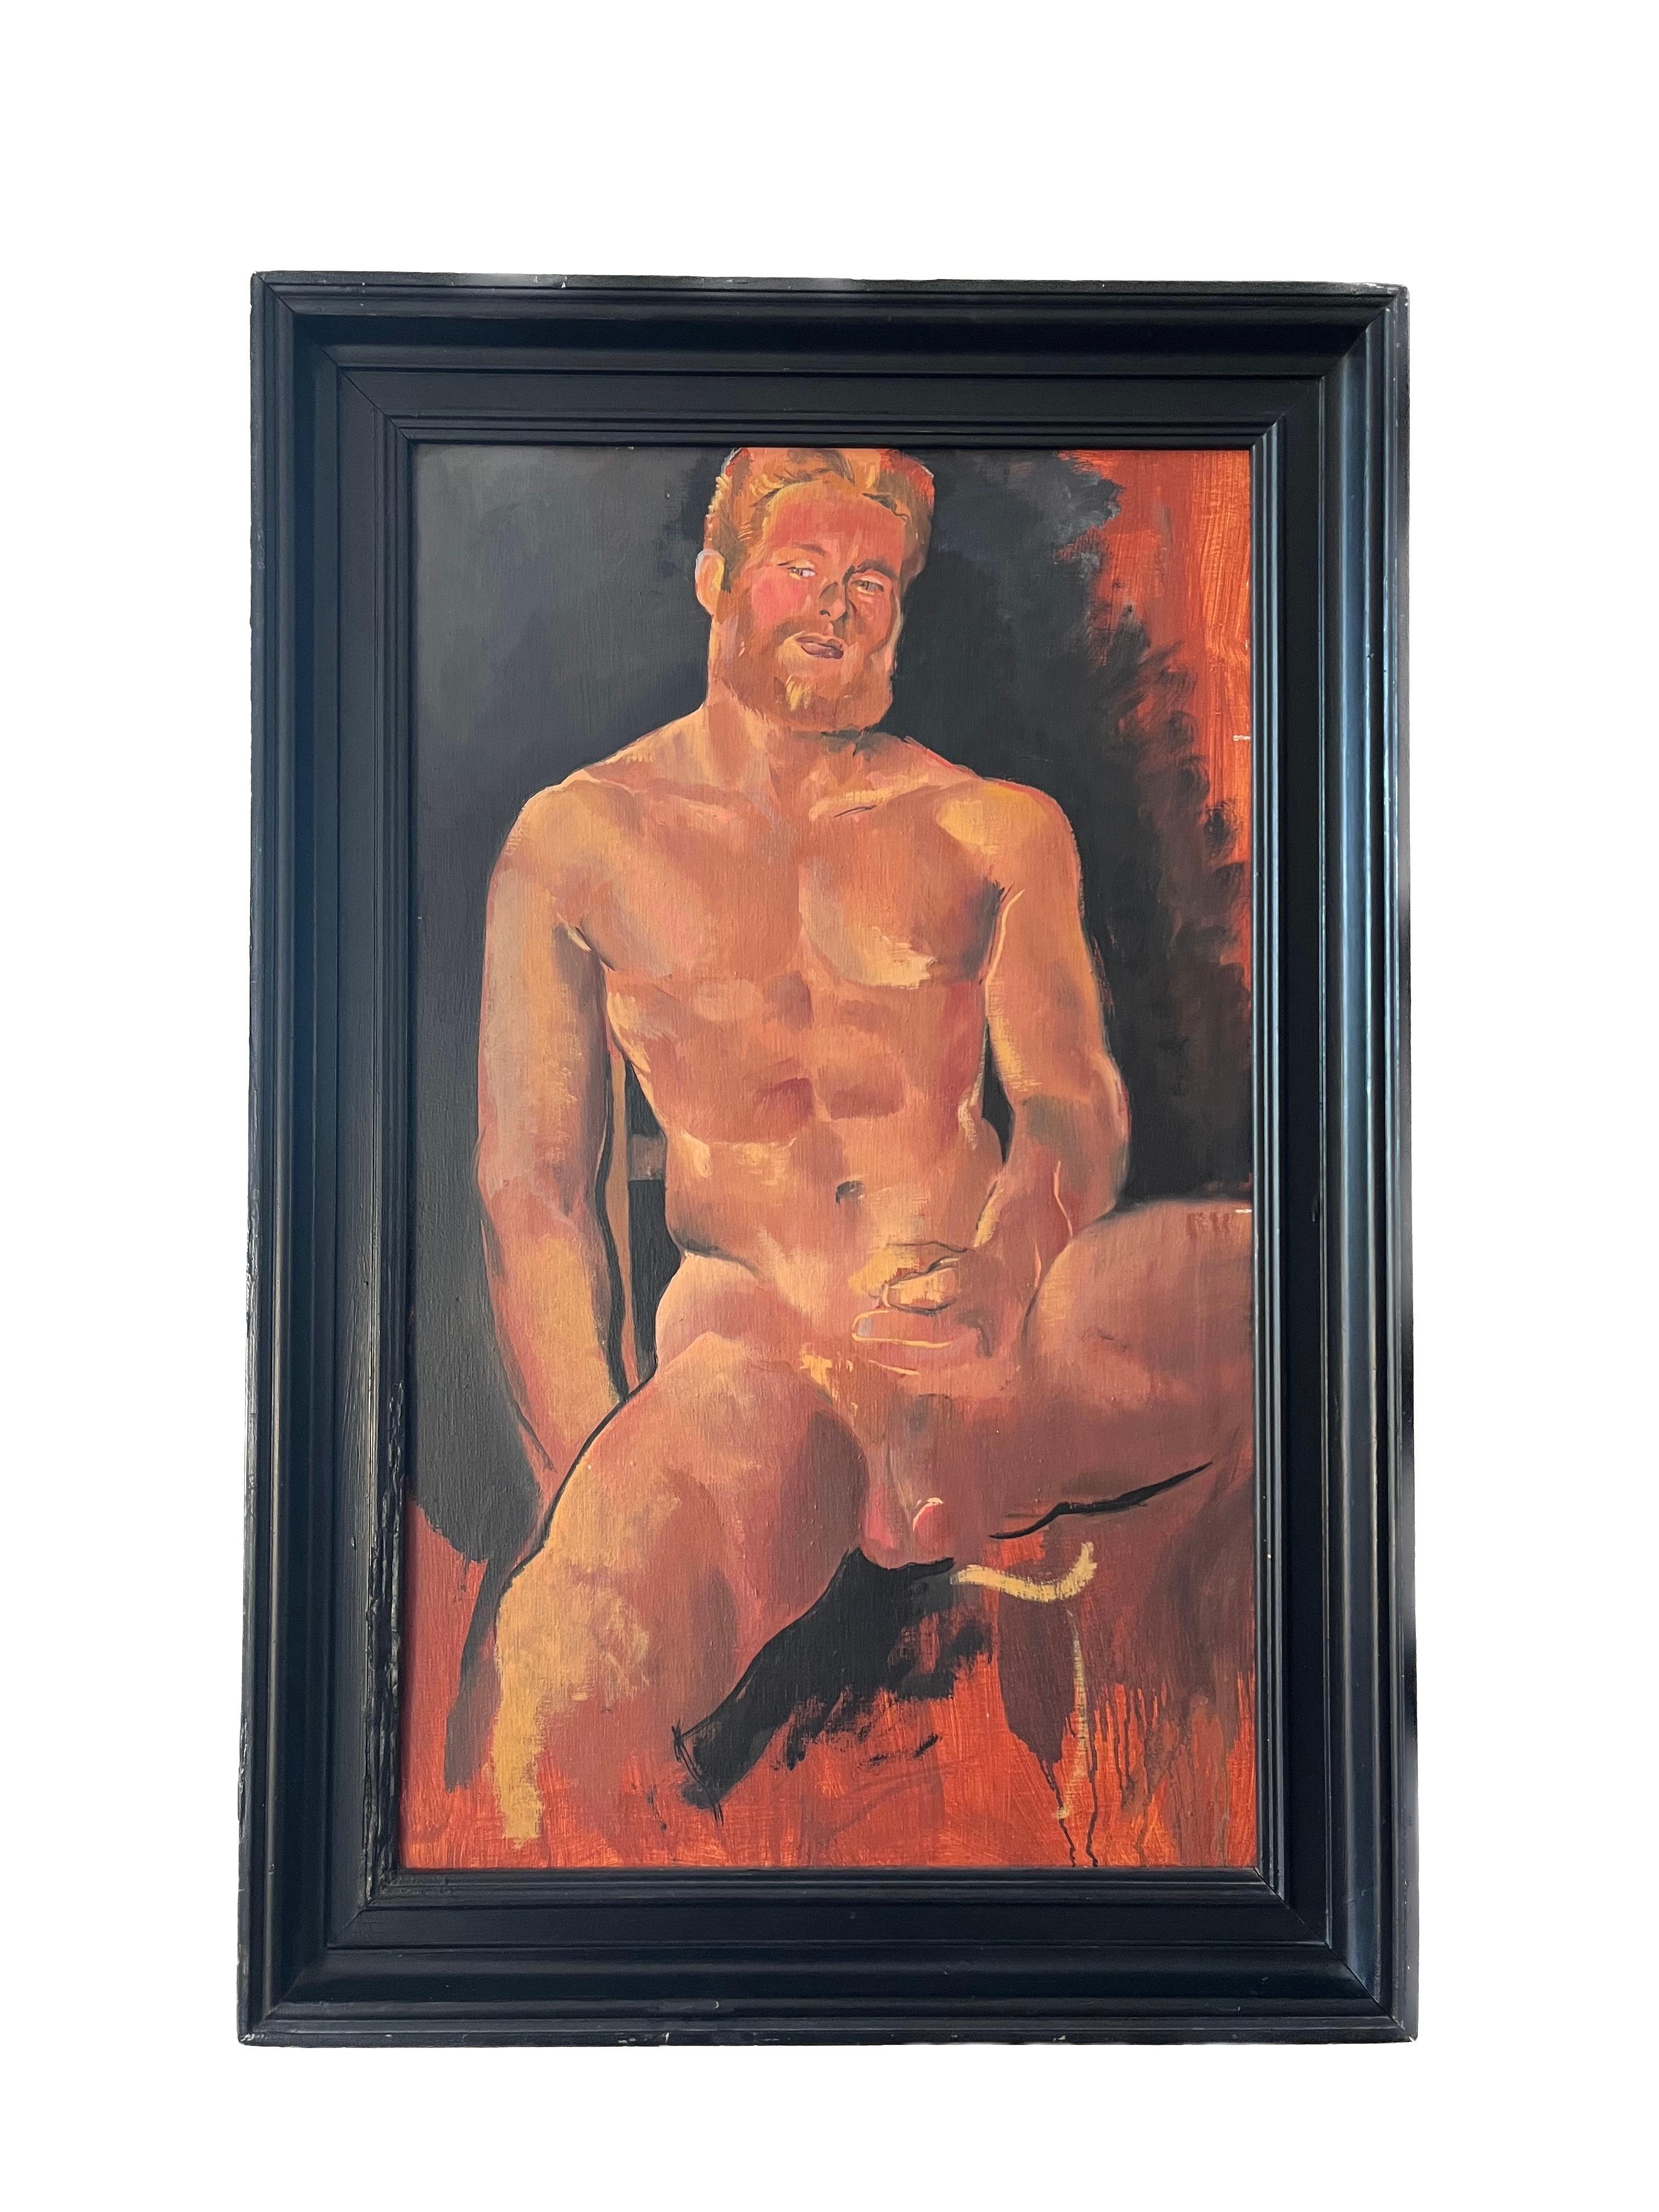 Portrait masculin nu érotique de l'amant de l'artiste, pièce emblématique de l'histoire du gay des années 1980